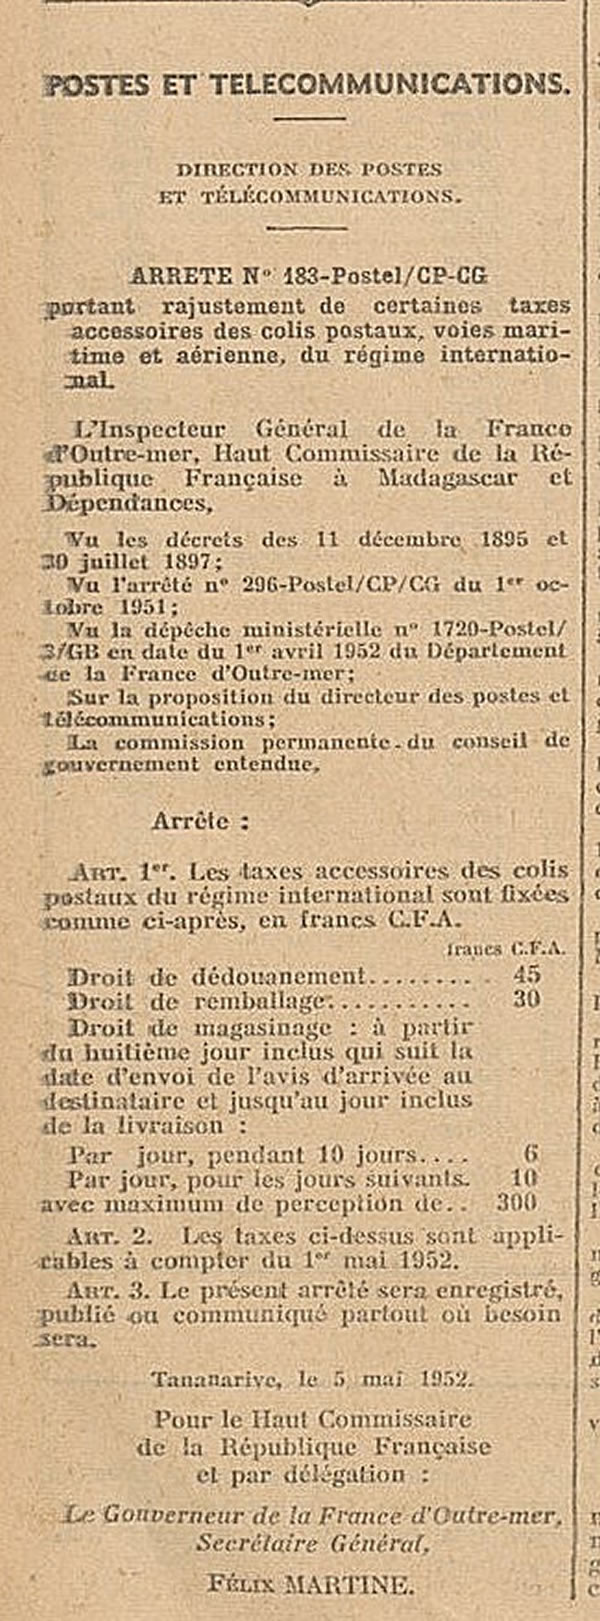 Tarifs-mada-gascar colis postaux internationaux 5/5/1952